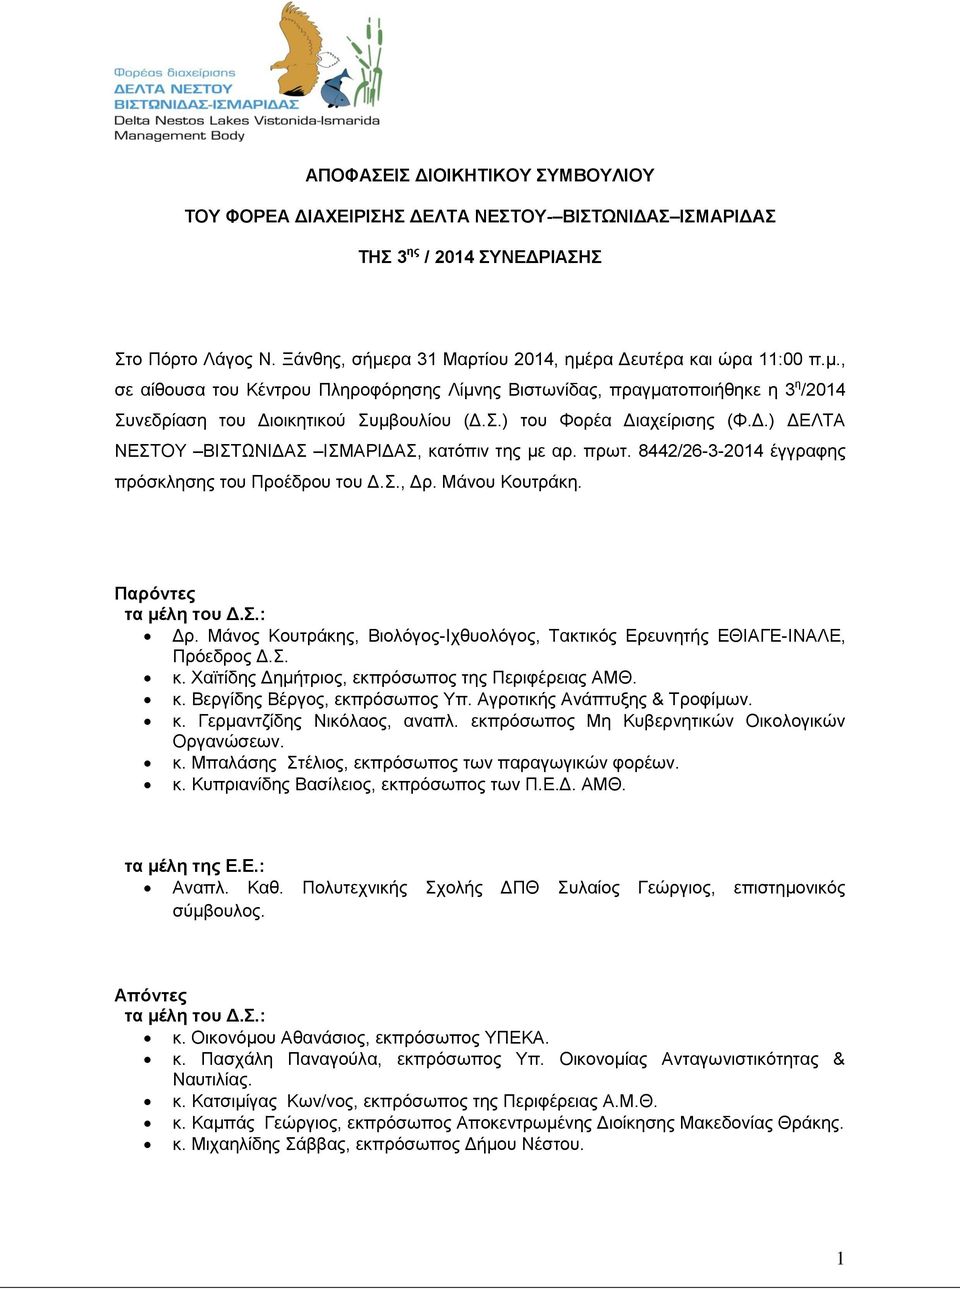 πρωτ. 8442/26-3-2014 έγγραφης πρόσκλησης του Προέδρου του Δ.Σ., Δρ. Μάνου Κουτράκη. Παρόντες τα μέλη του Δ.Σ.: Δρ. Μάνος Κουτράκης, Βιολόγος-Ιχθυολόγος, Τακτικός Ερευνητής ΕΘΙΑΓΕ-ΙΝΑΛΕ, Πρόεδρος Δ.Σ. κ.